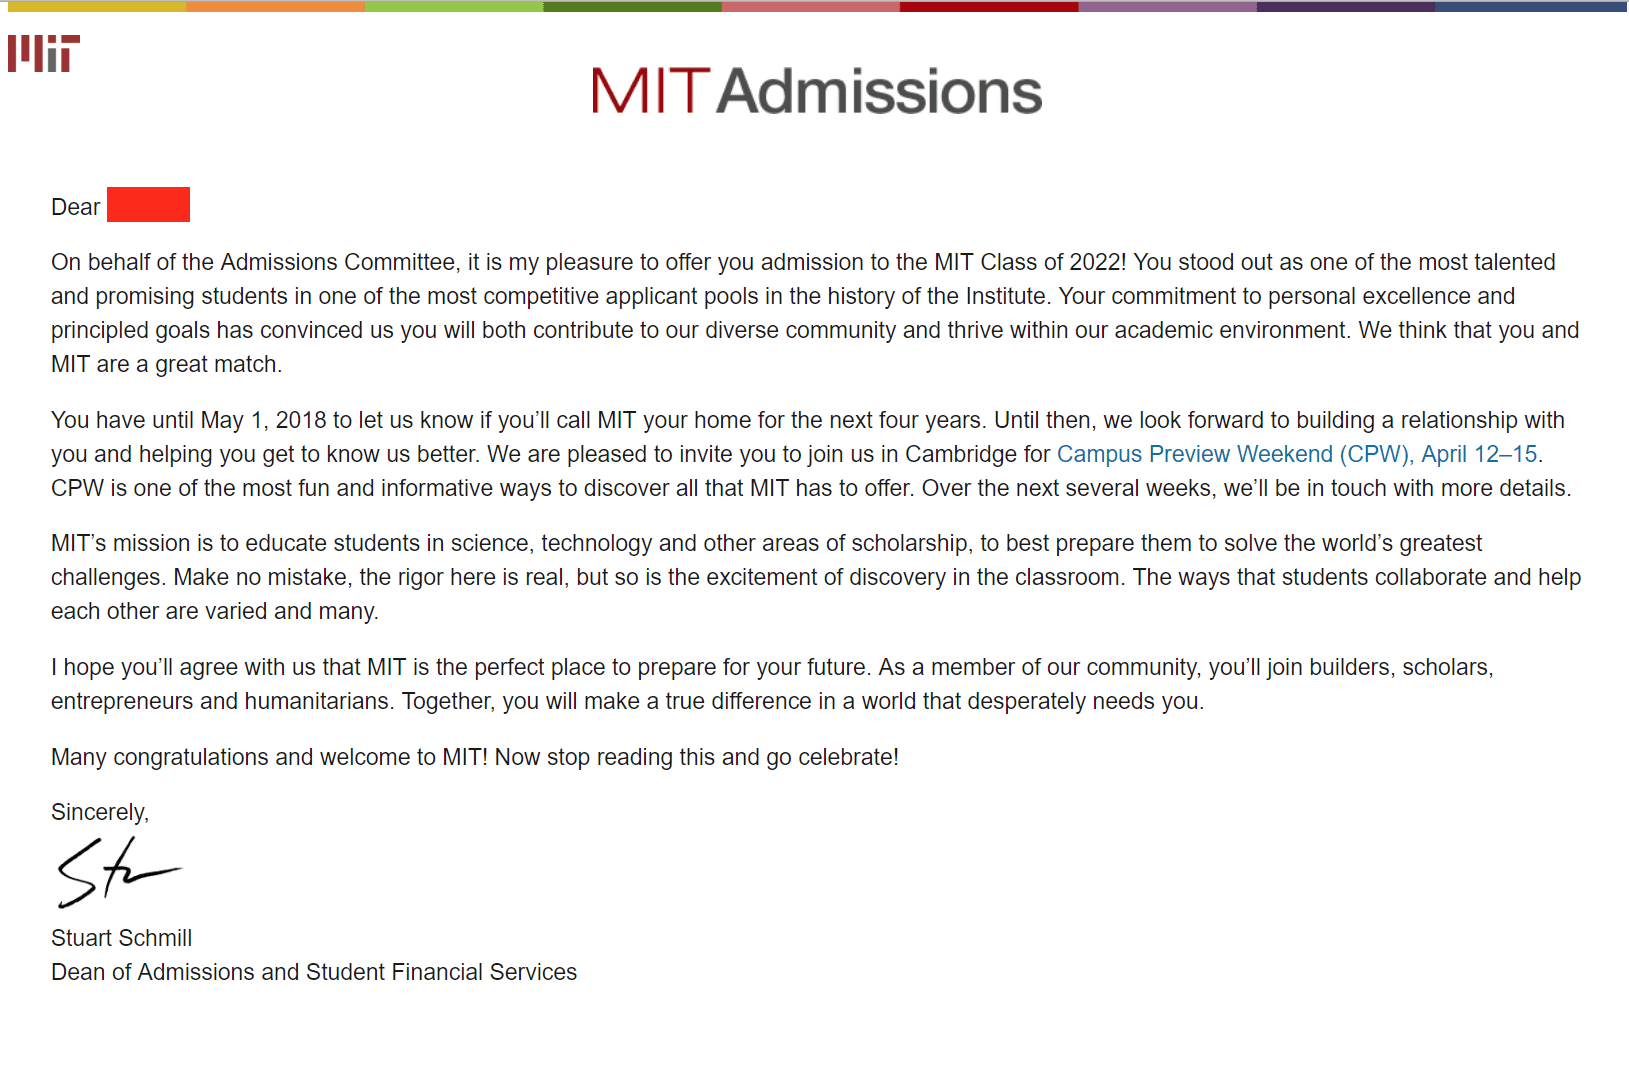 MIT acceptance letter